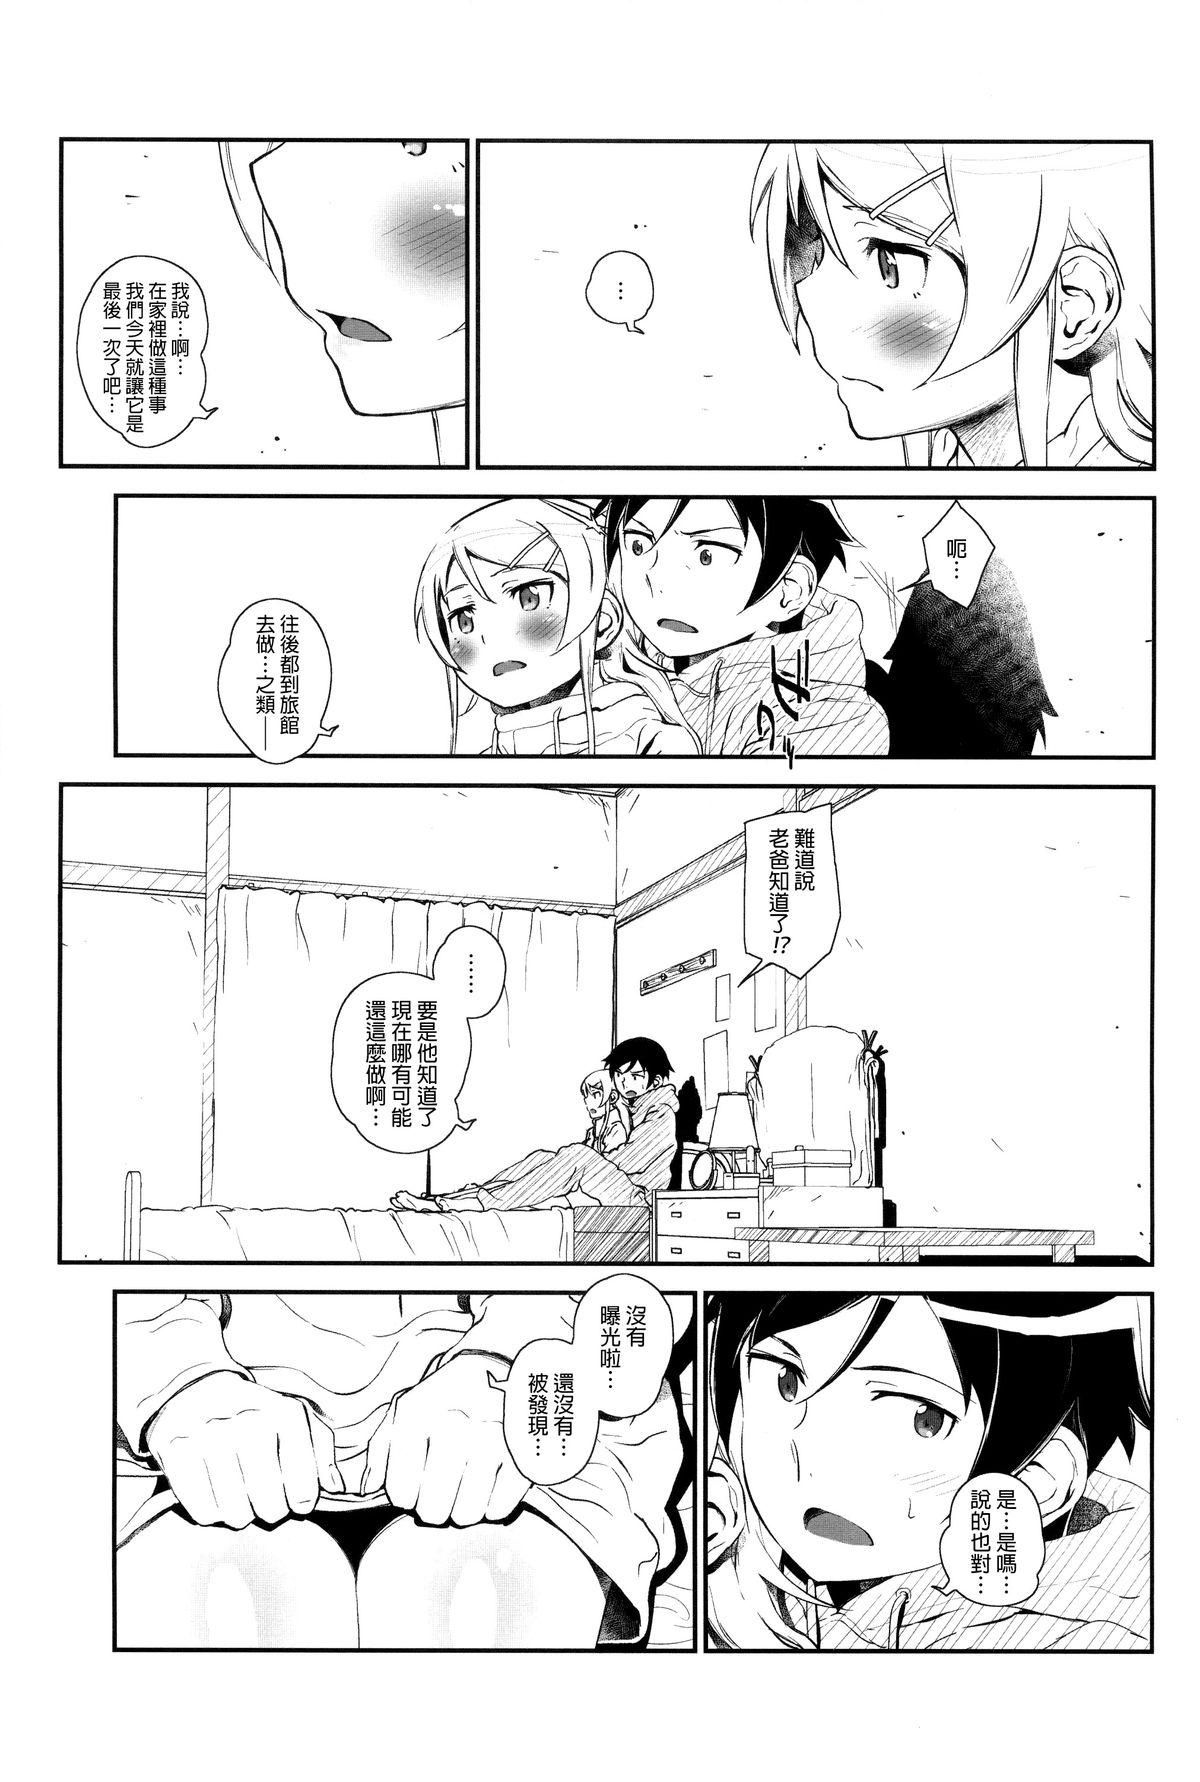 Bribe Hoshikuzu Namida 4 - Ore no imouto ga konna ni kawaii wake ga nai Assfingering - Page 10